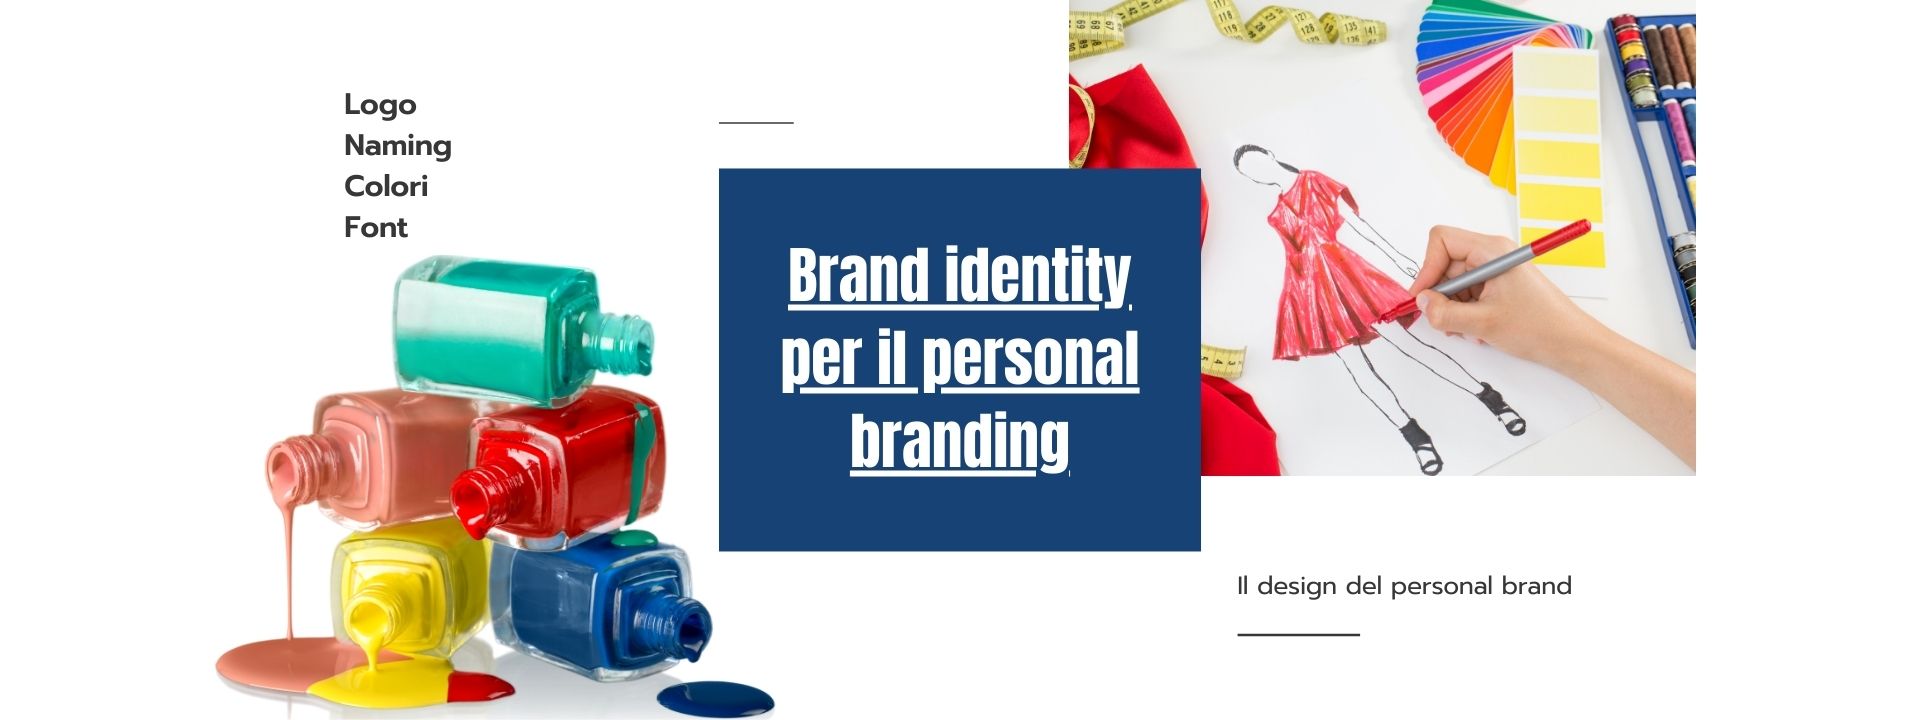 Identità di brand nel personal branding